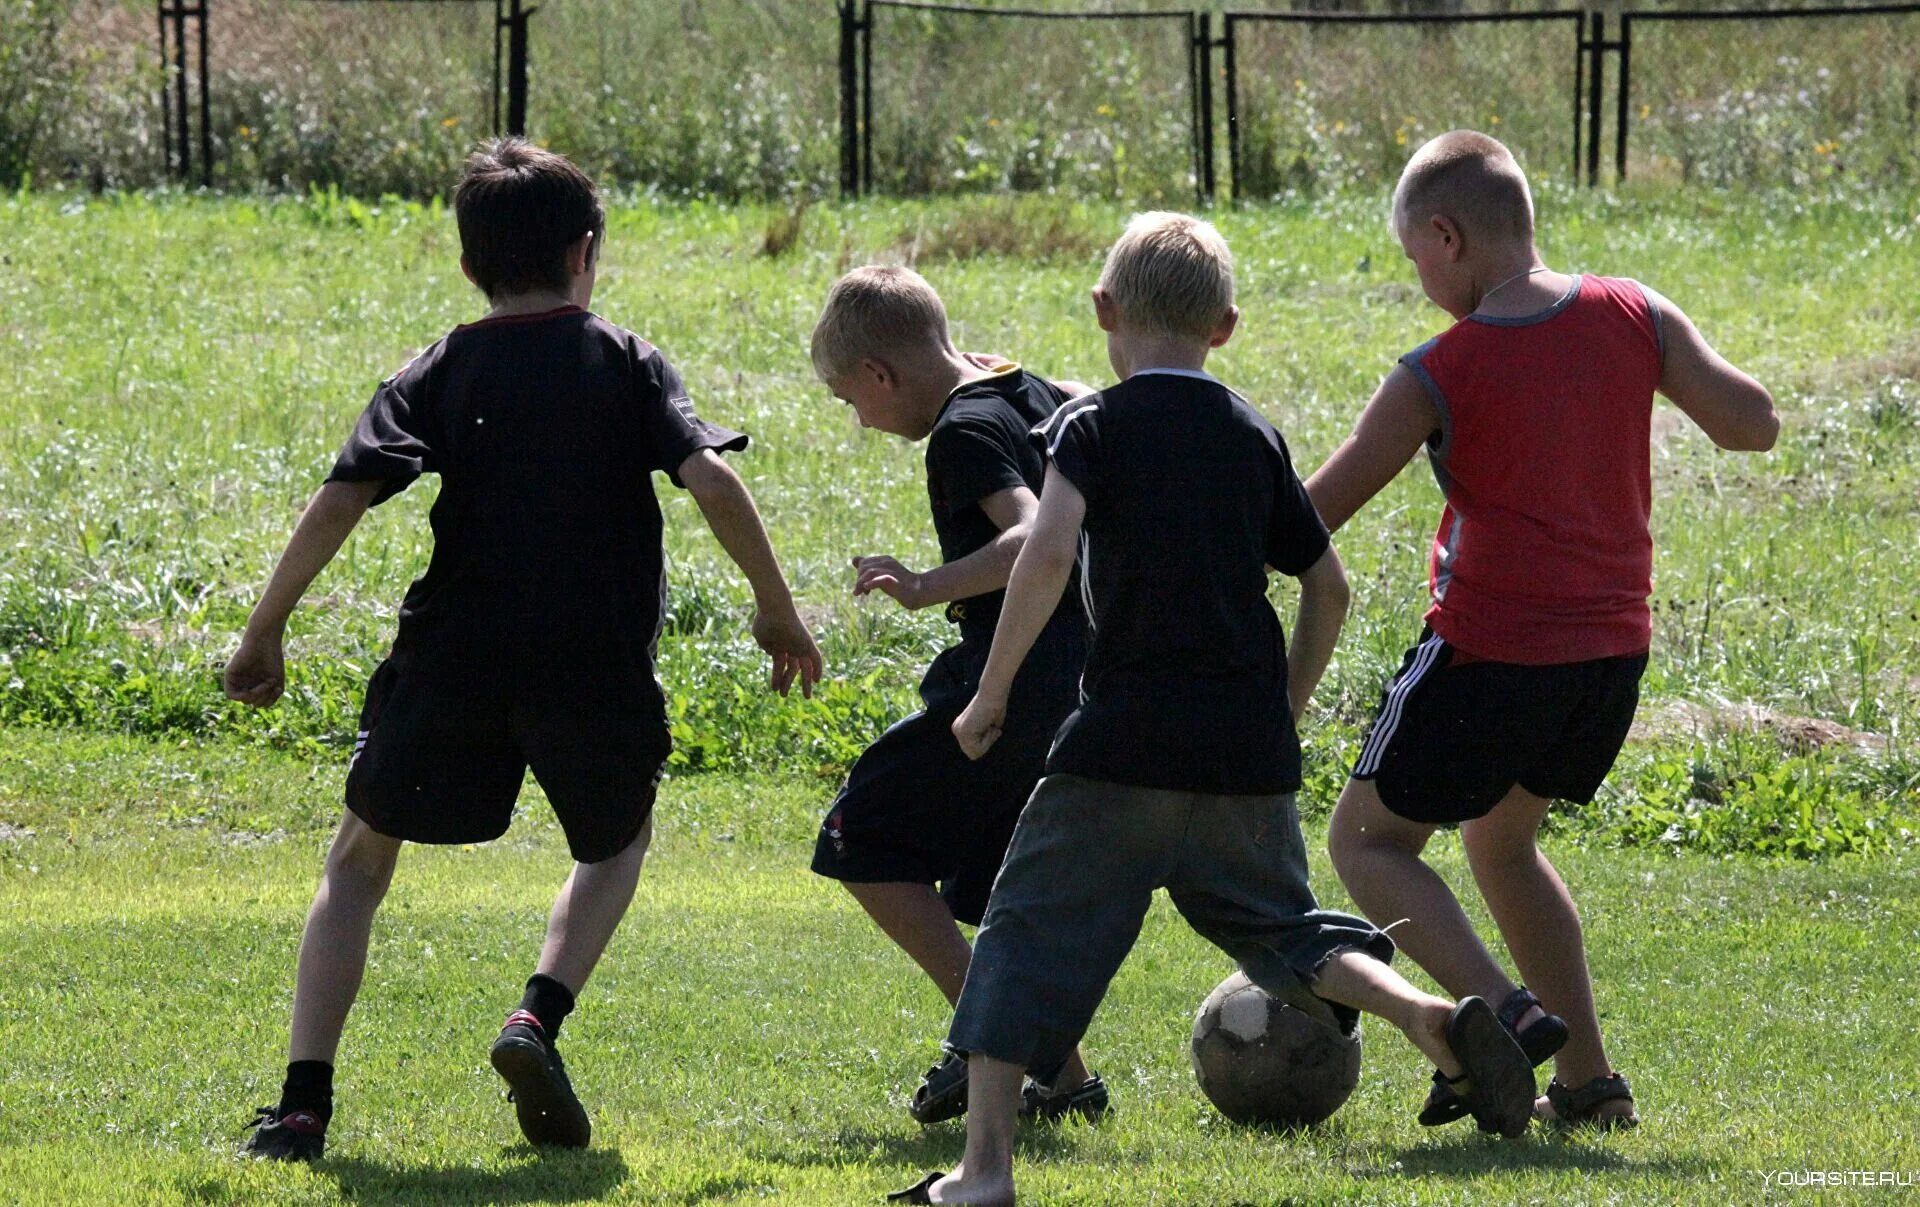 Дети играют в футбол. Дети во дворе. Футбол во дворе. Дети играющие в футбол во дворе. Играют на улице видео